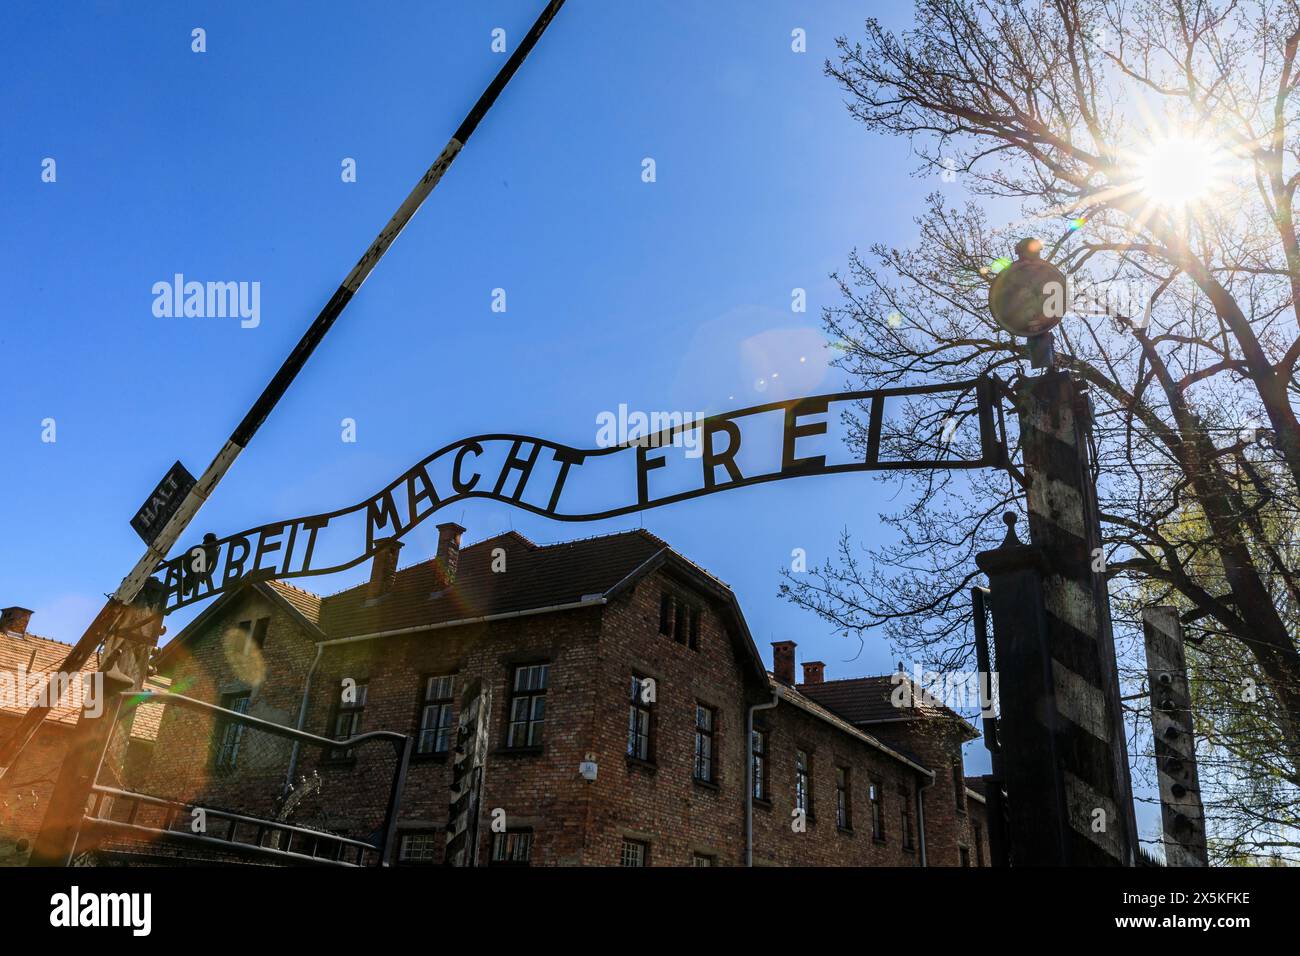 Poland, Oswiecim, Auschwitz-Birkenau. WWll, Entrance gate. Infamous slogan Arbeit Macht Frei: 'Work makes (one) free'. Slave labor camp. Stock Photo